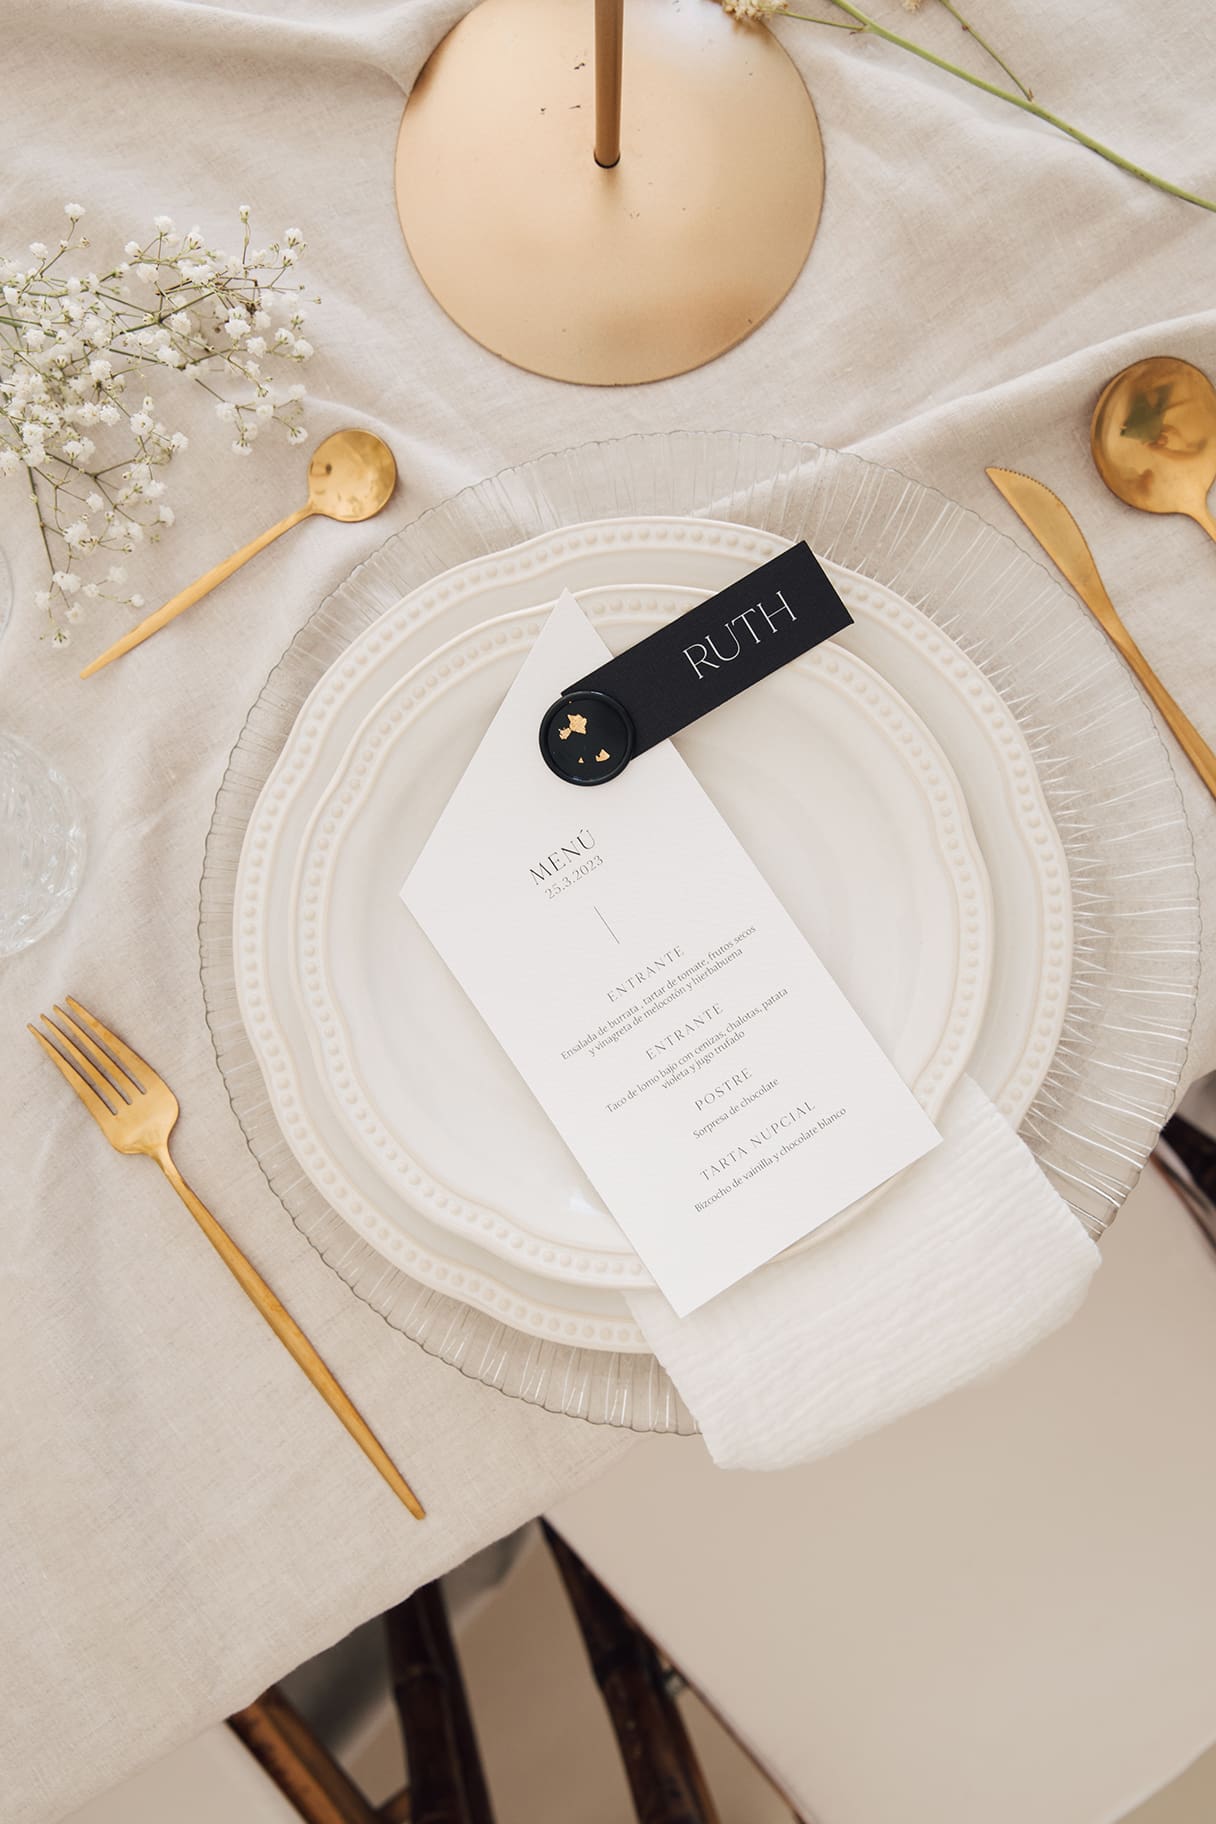 Menú de boda personalizado sobre plato y cubertería dorada en mesa.